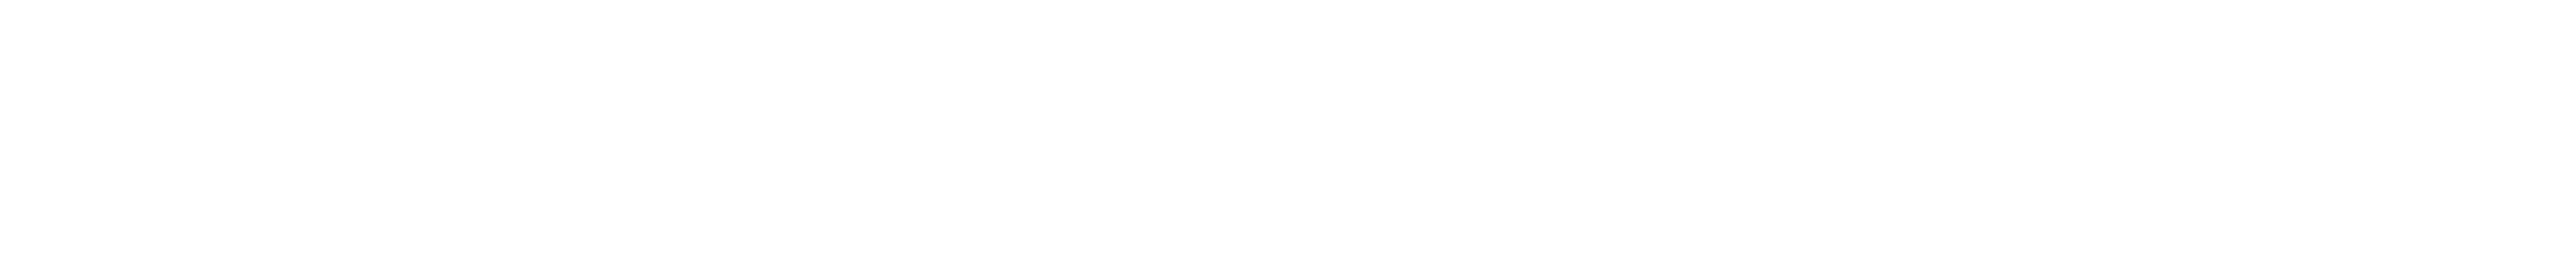 四川美术学院美术馆2022年度回顾 崇真艺客